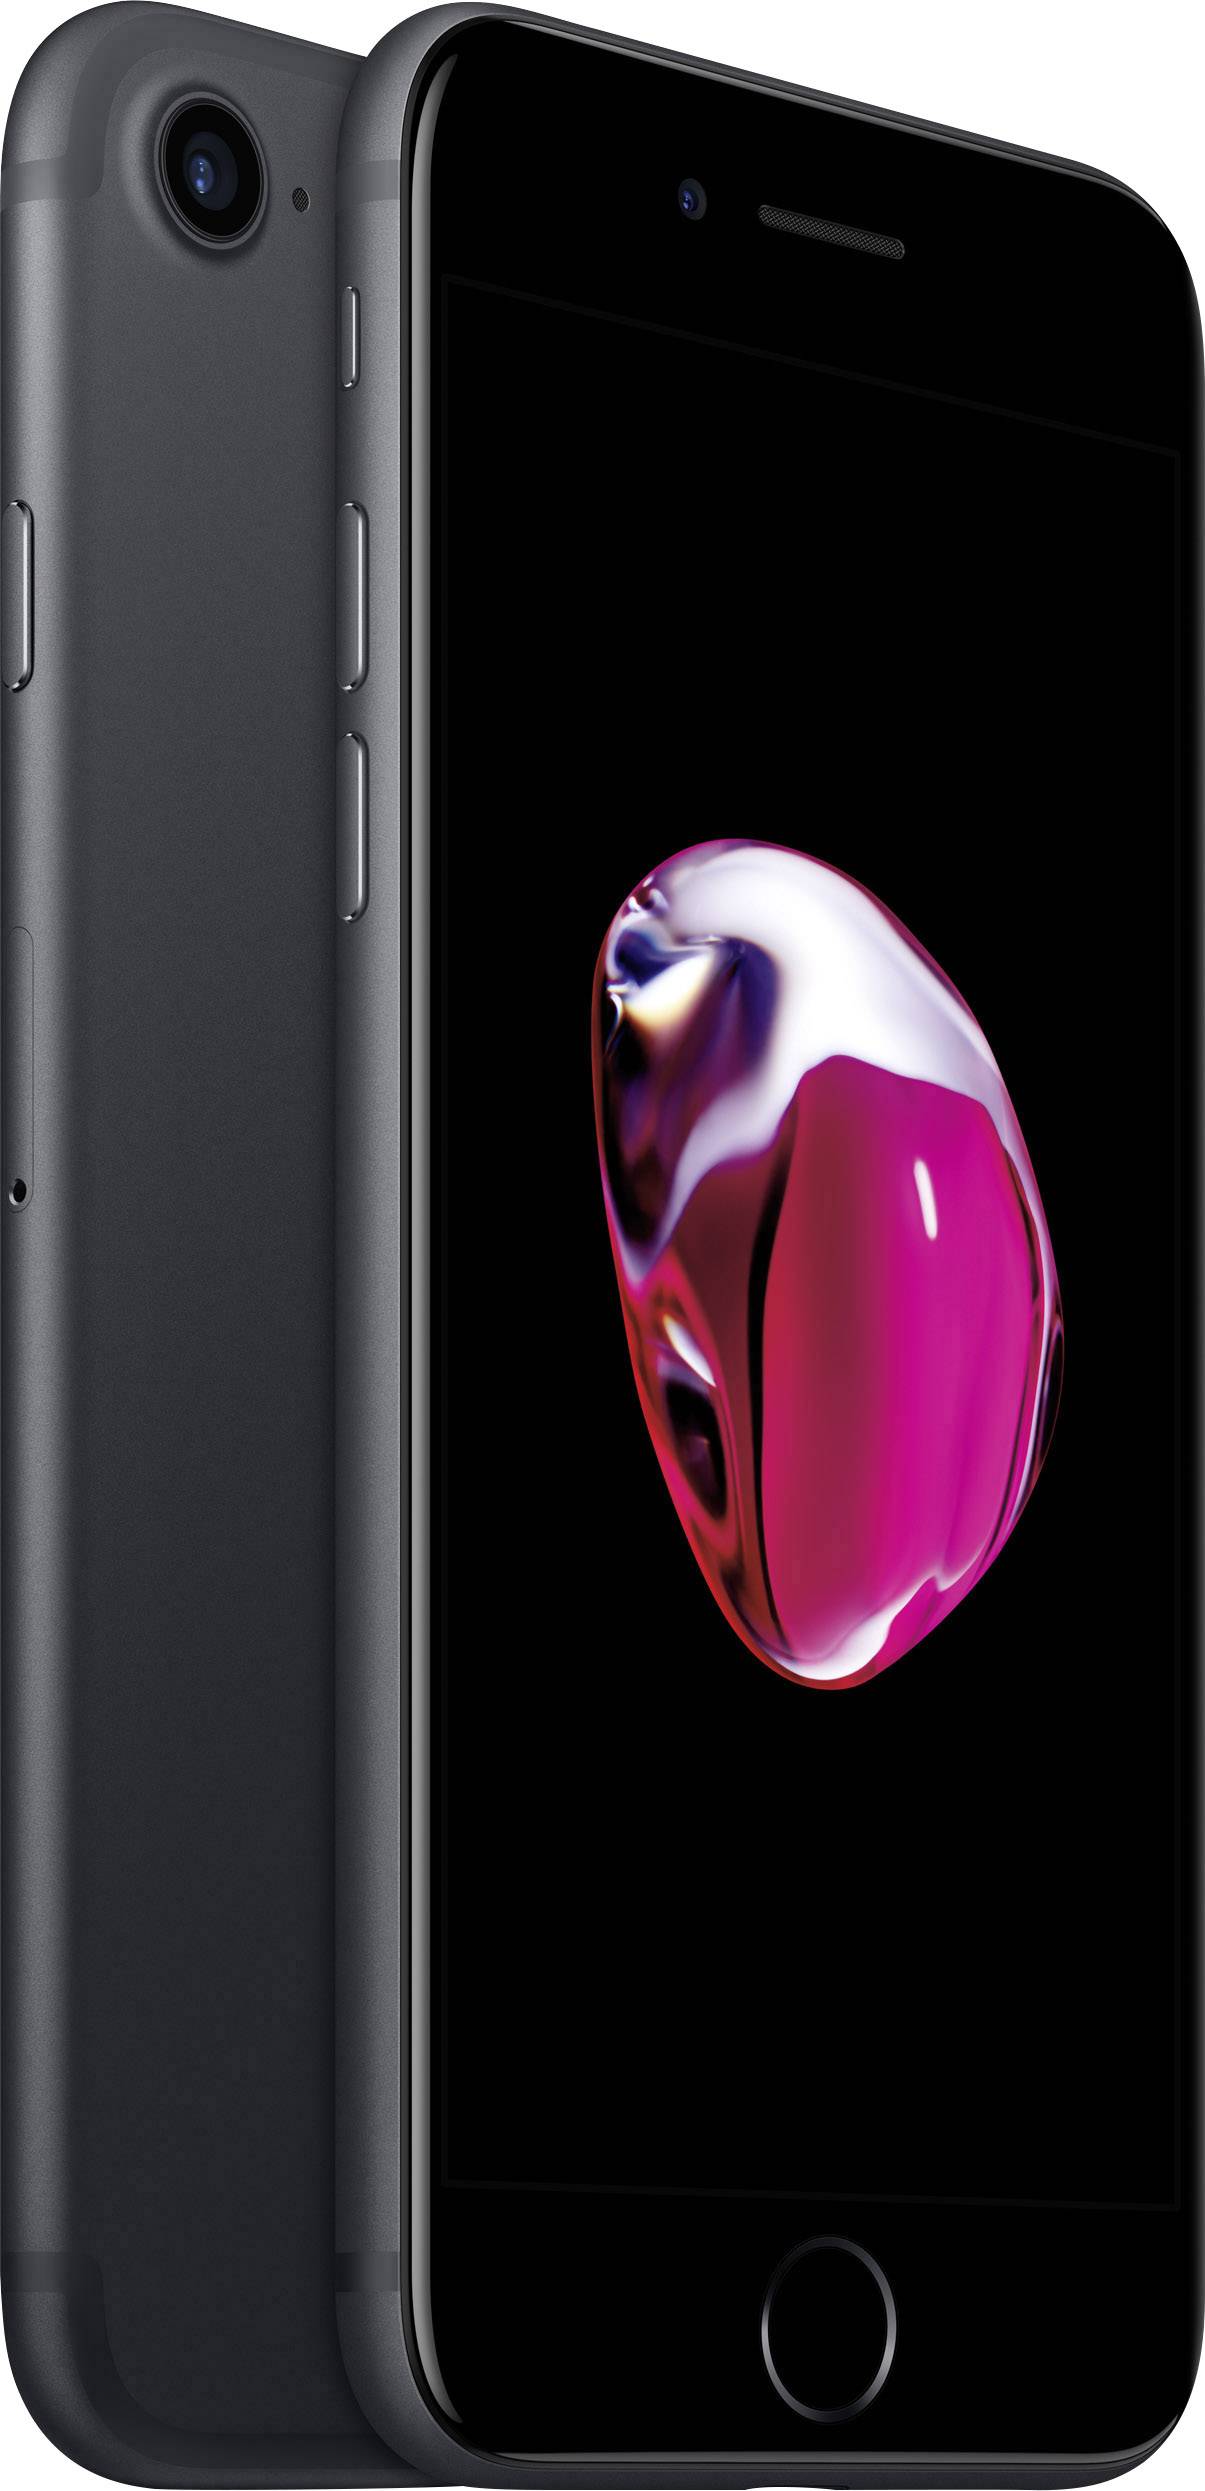 Apple iPhone 7 iPhone 32 GB 11.9 cm (4.7 inch) Black iOS 10 